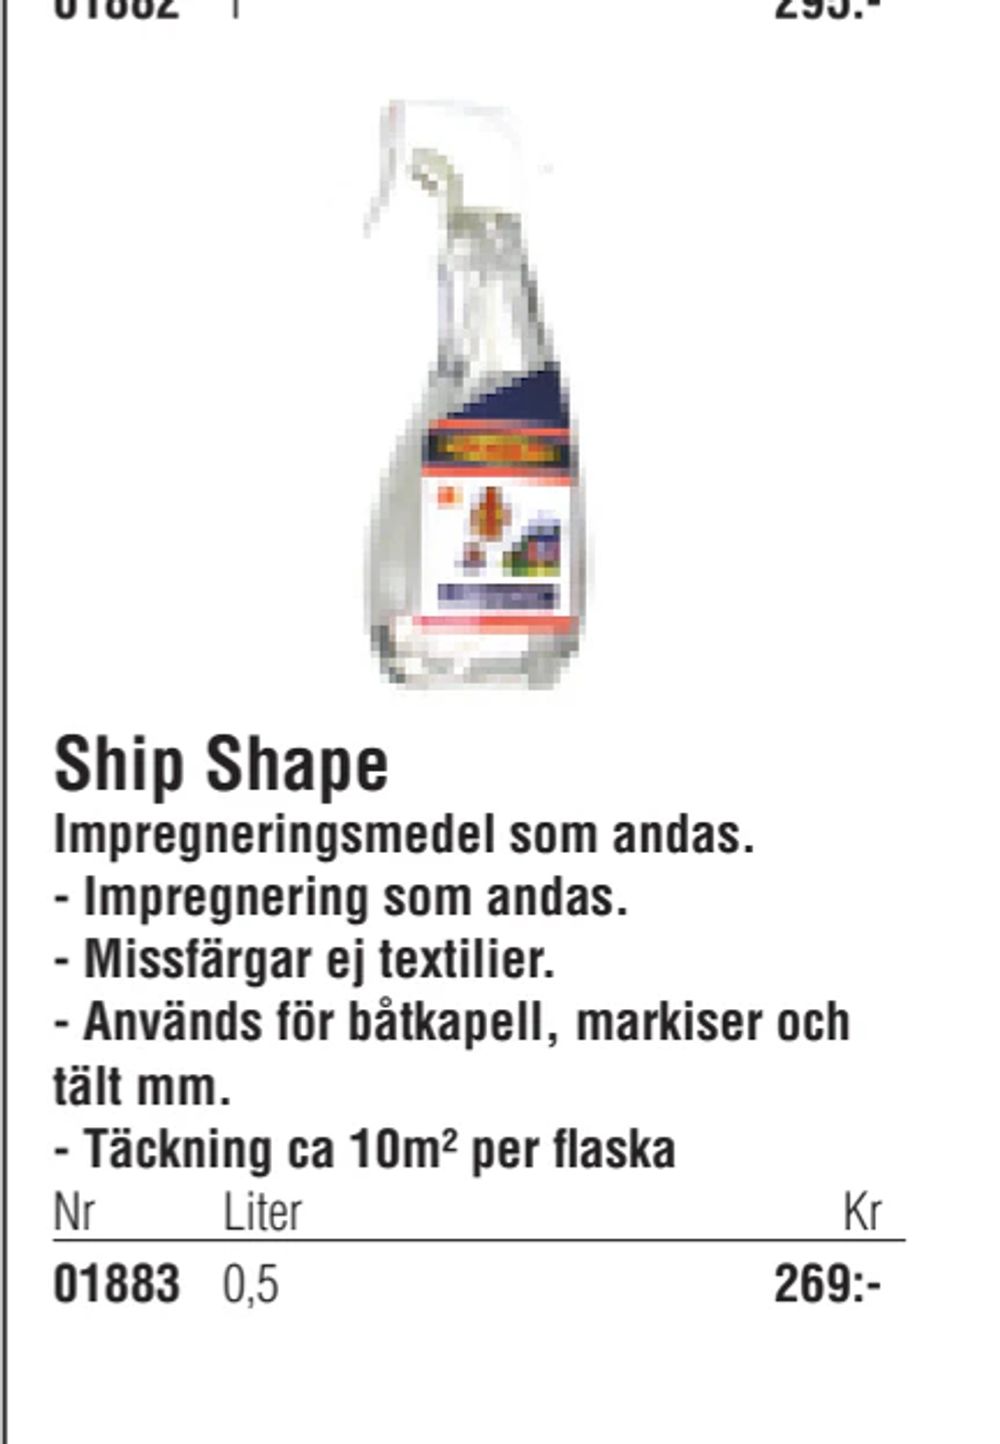 Erbjudanden på Ship Shape från Erlandsons Brygga för 269 kr